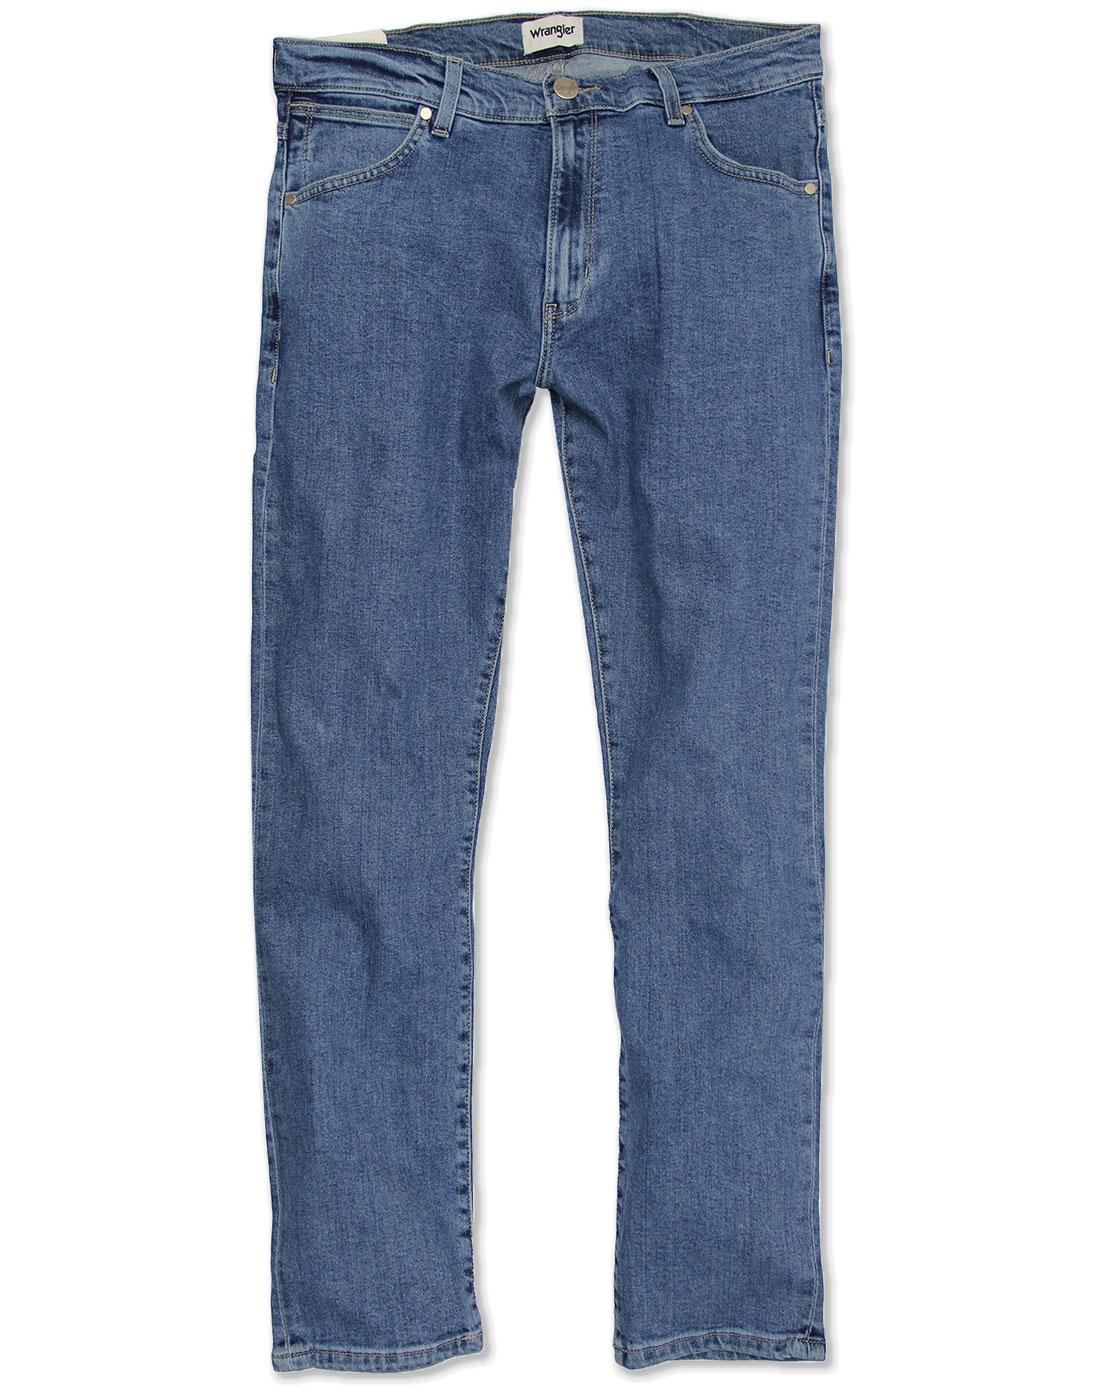  Larston WRANGLER Retro Slim Taper Midstone Jeans